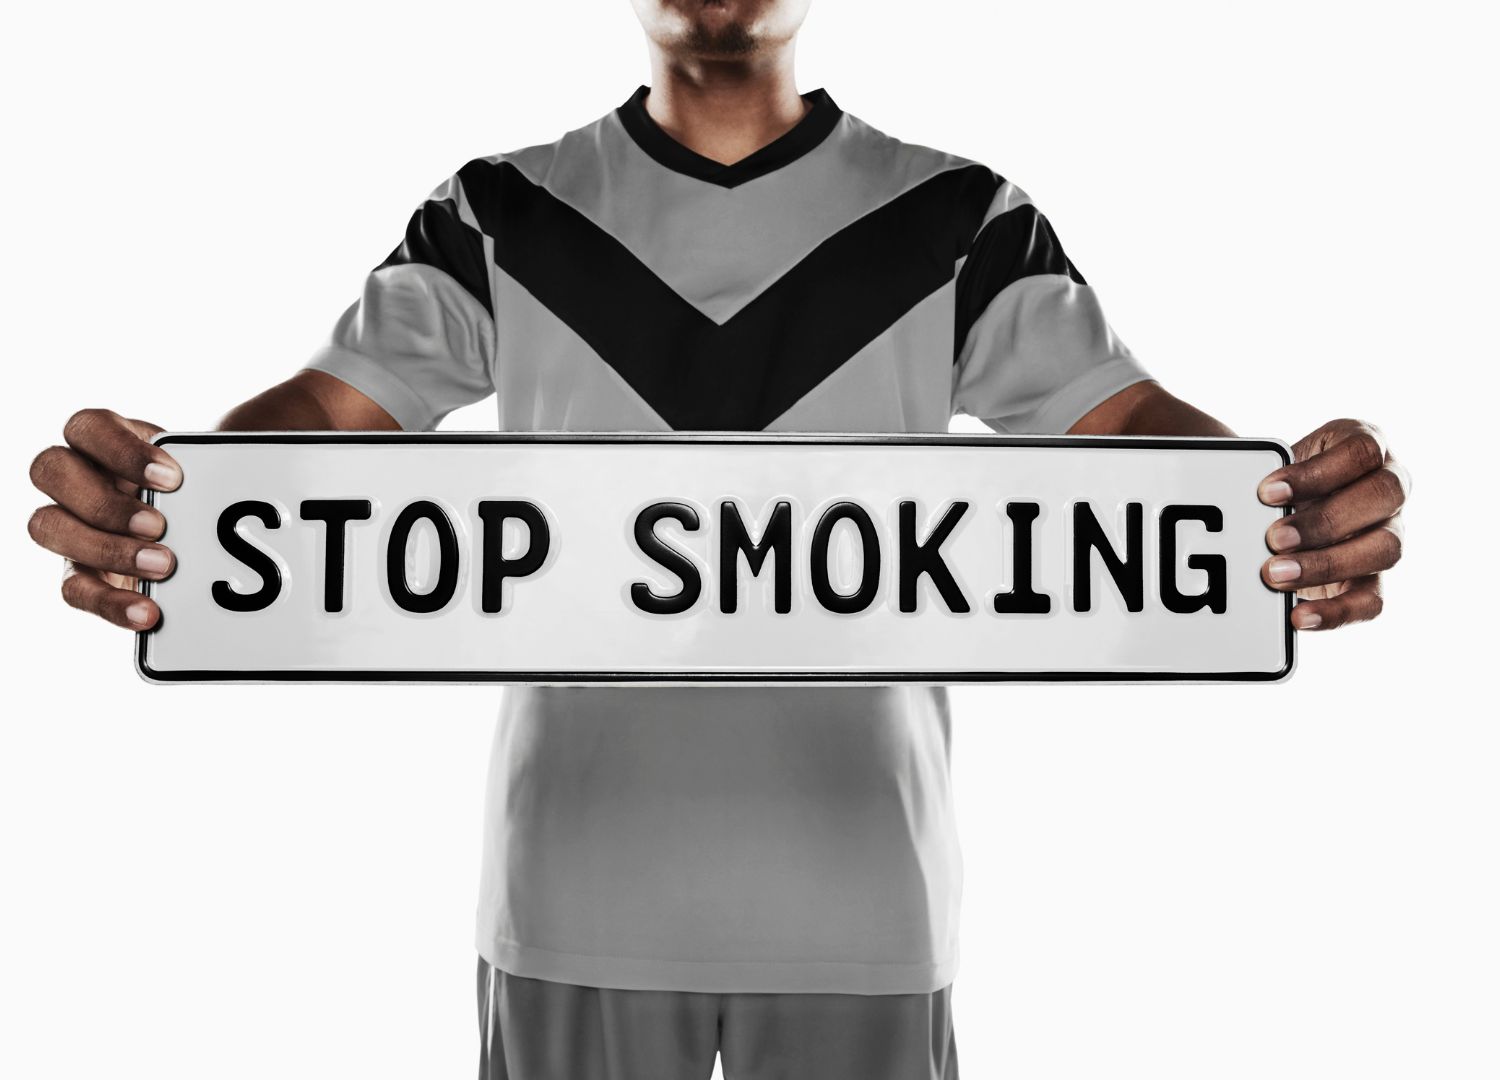 10 Reasons to stop smoking